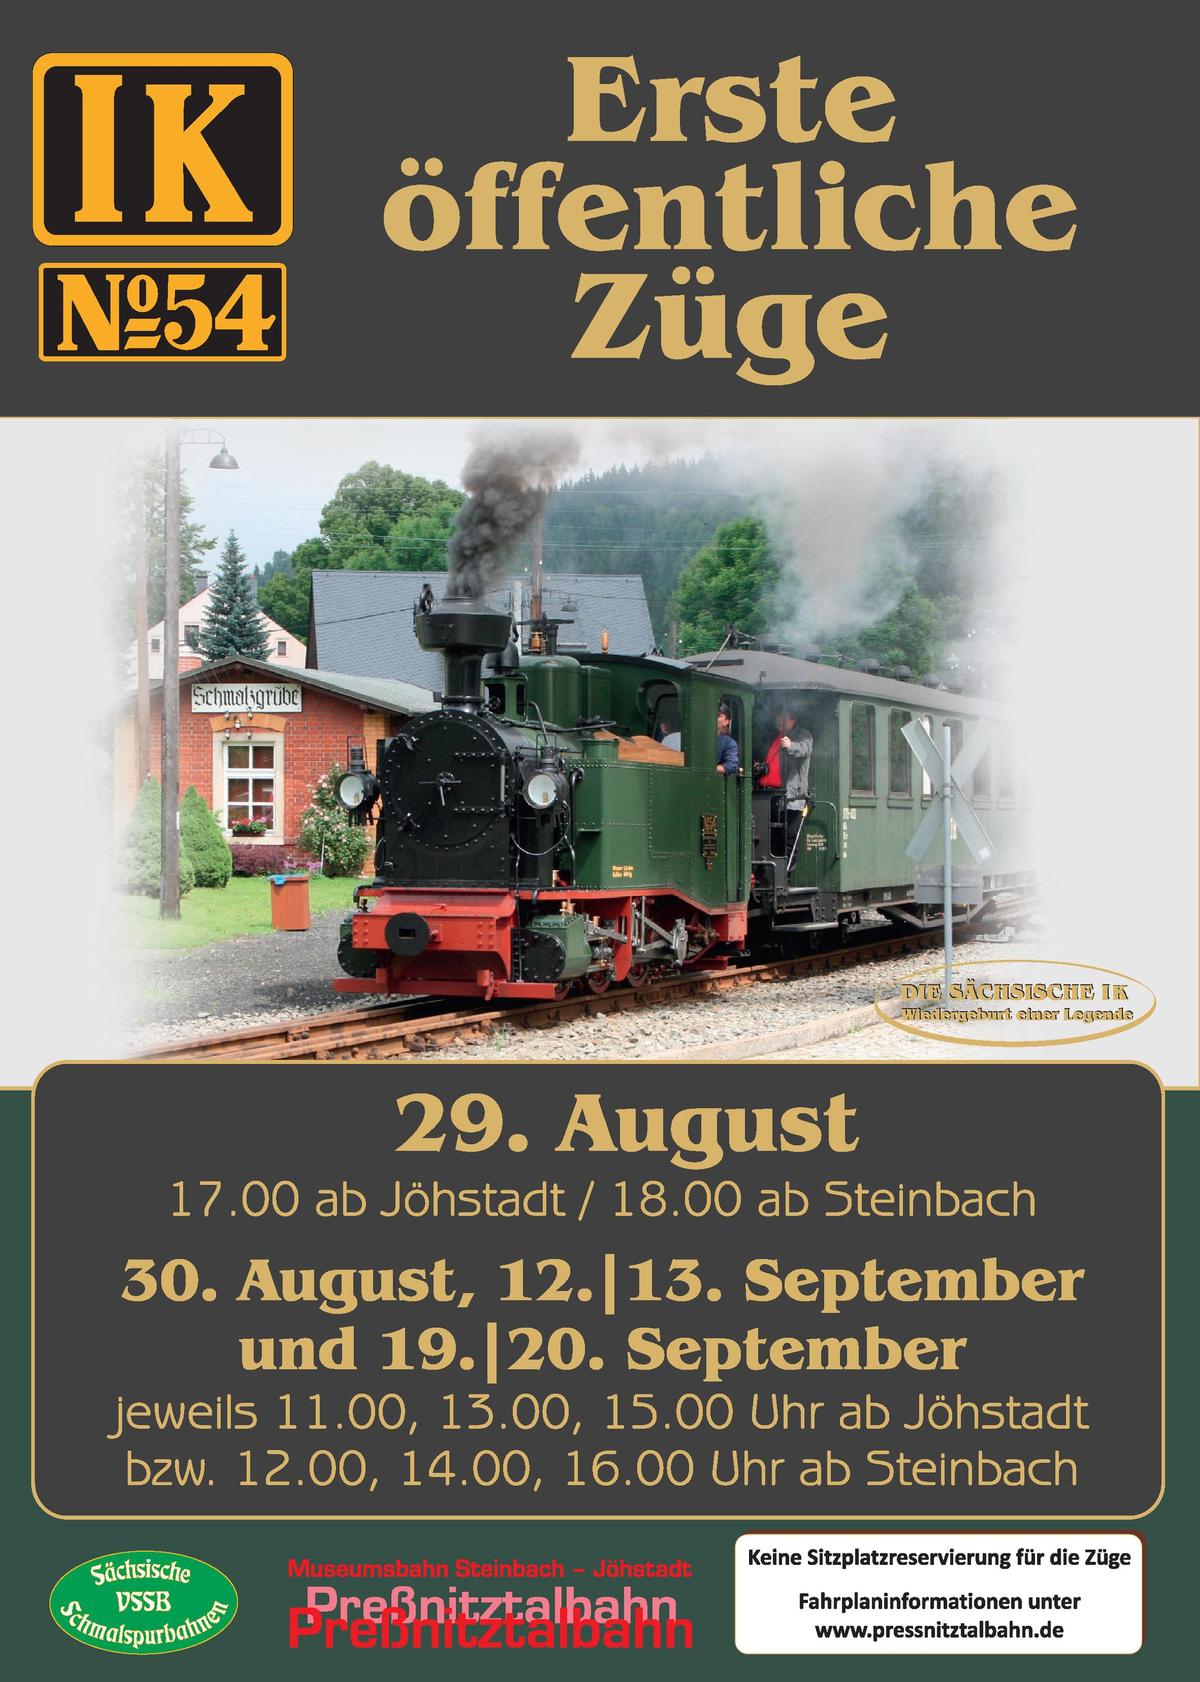 Veranstaltungsankündigung: 29./30. August | 12./13. September | 19./20. September: Erste öffentliche Züge der I K Nr. 54